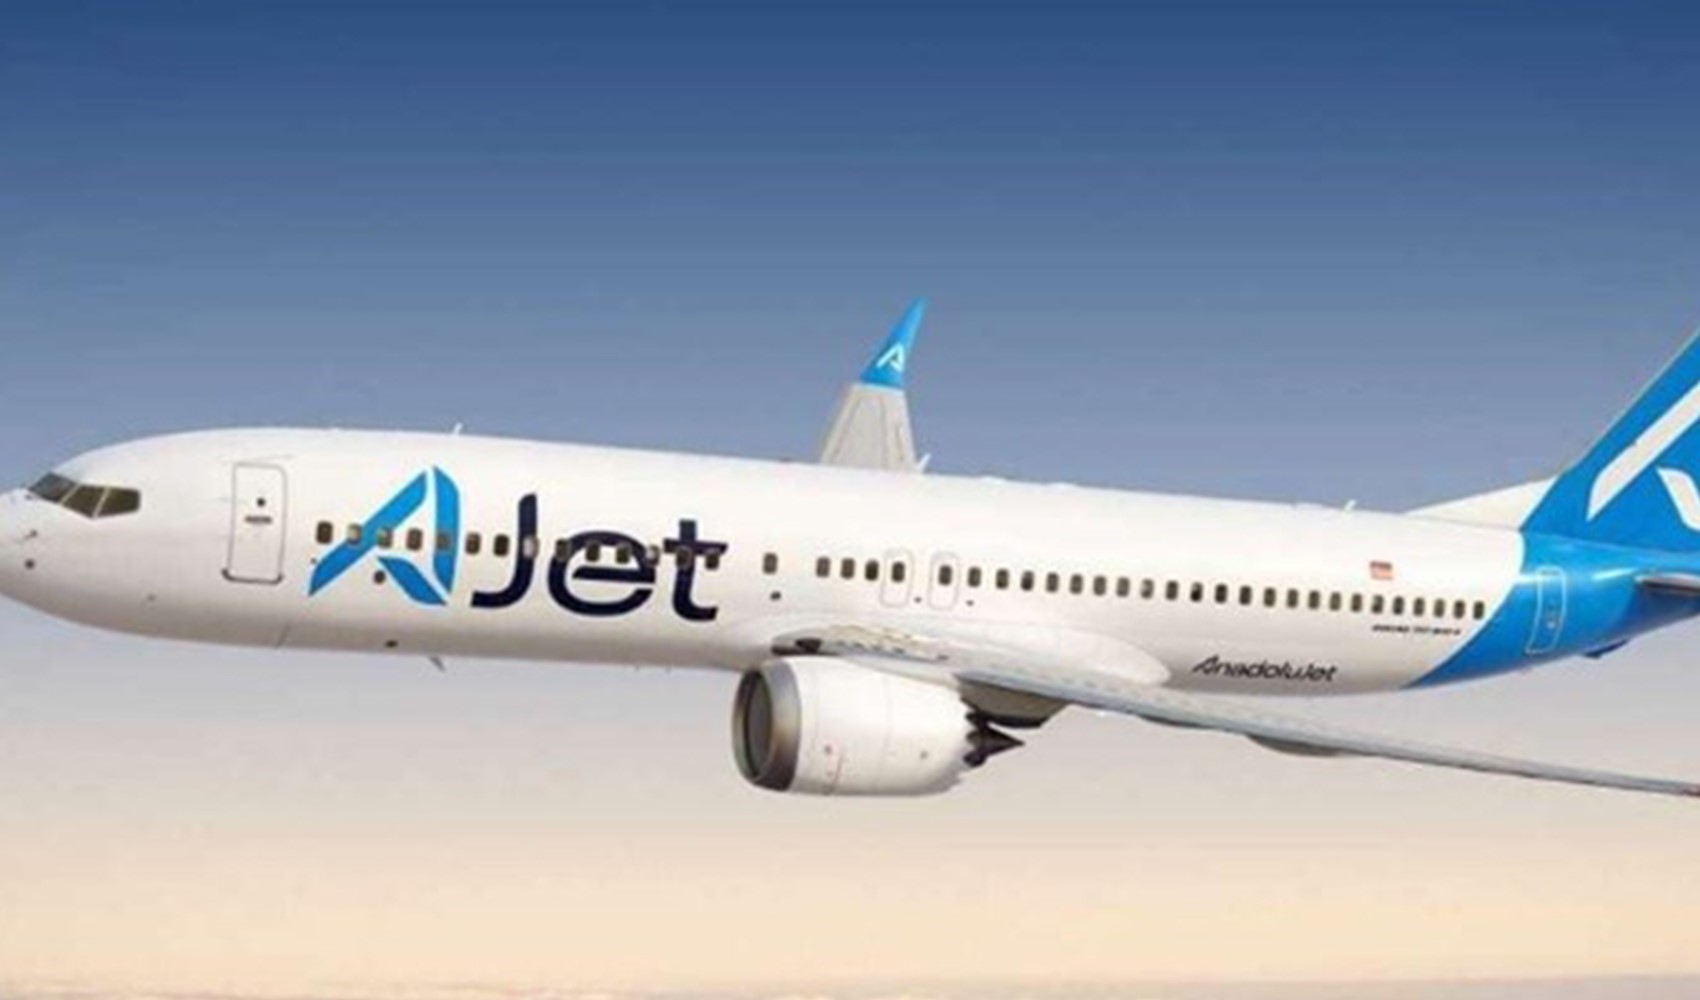 THY'nin yeni markasının bilet satışları başladı: AJet 44 ülkeye uçacak